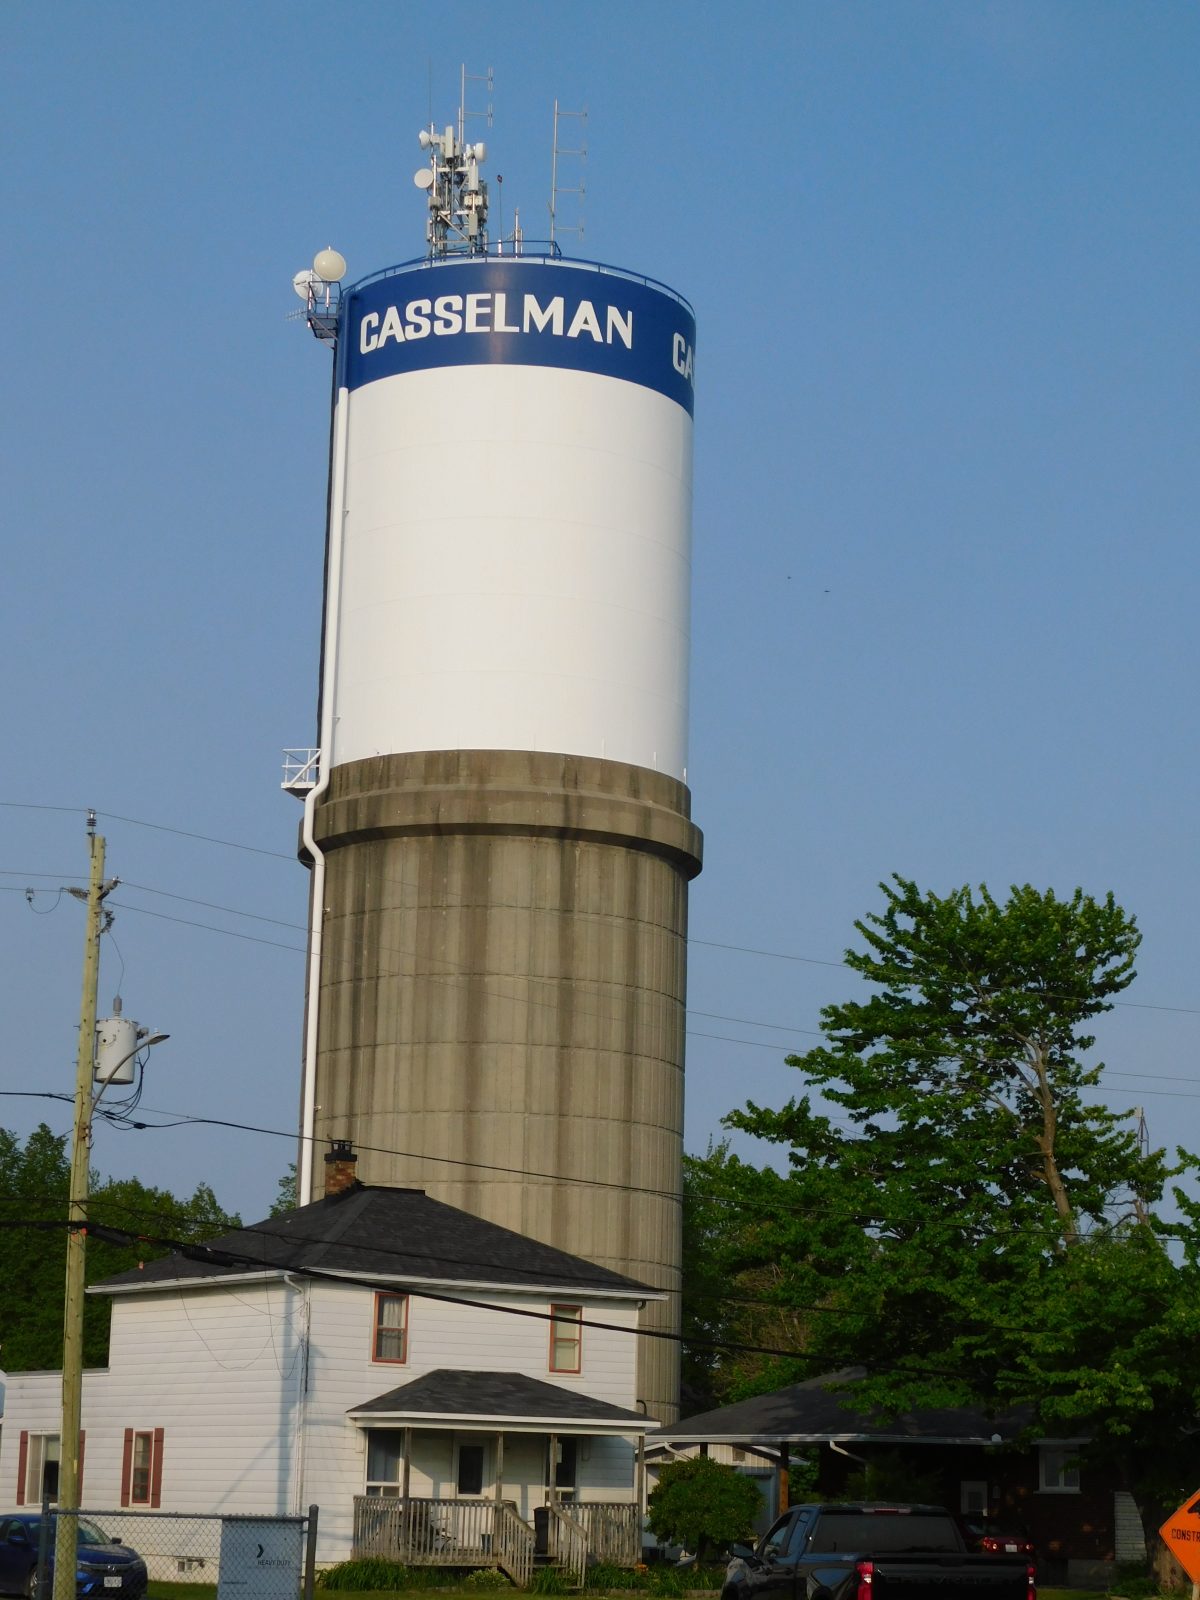 Casselman water treatment repairs to begin in April